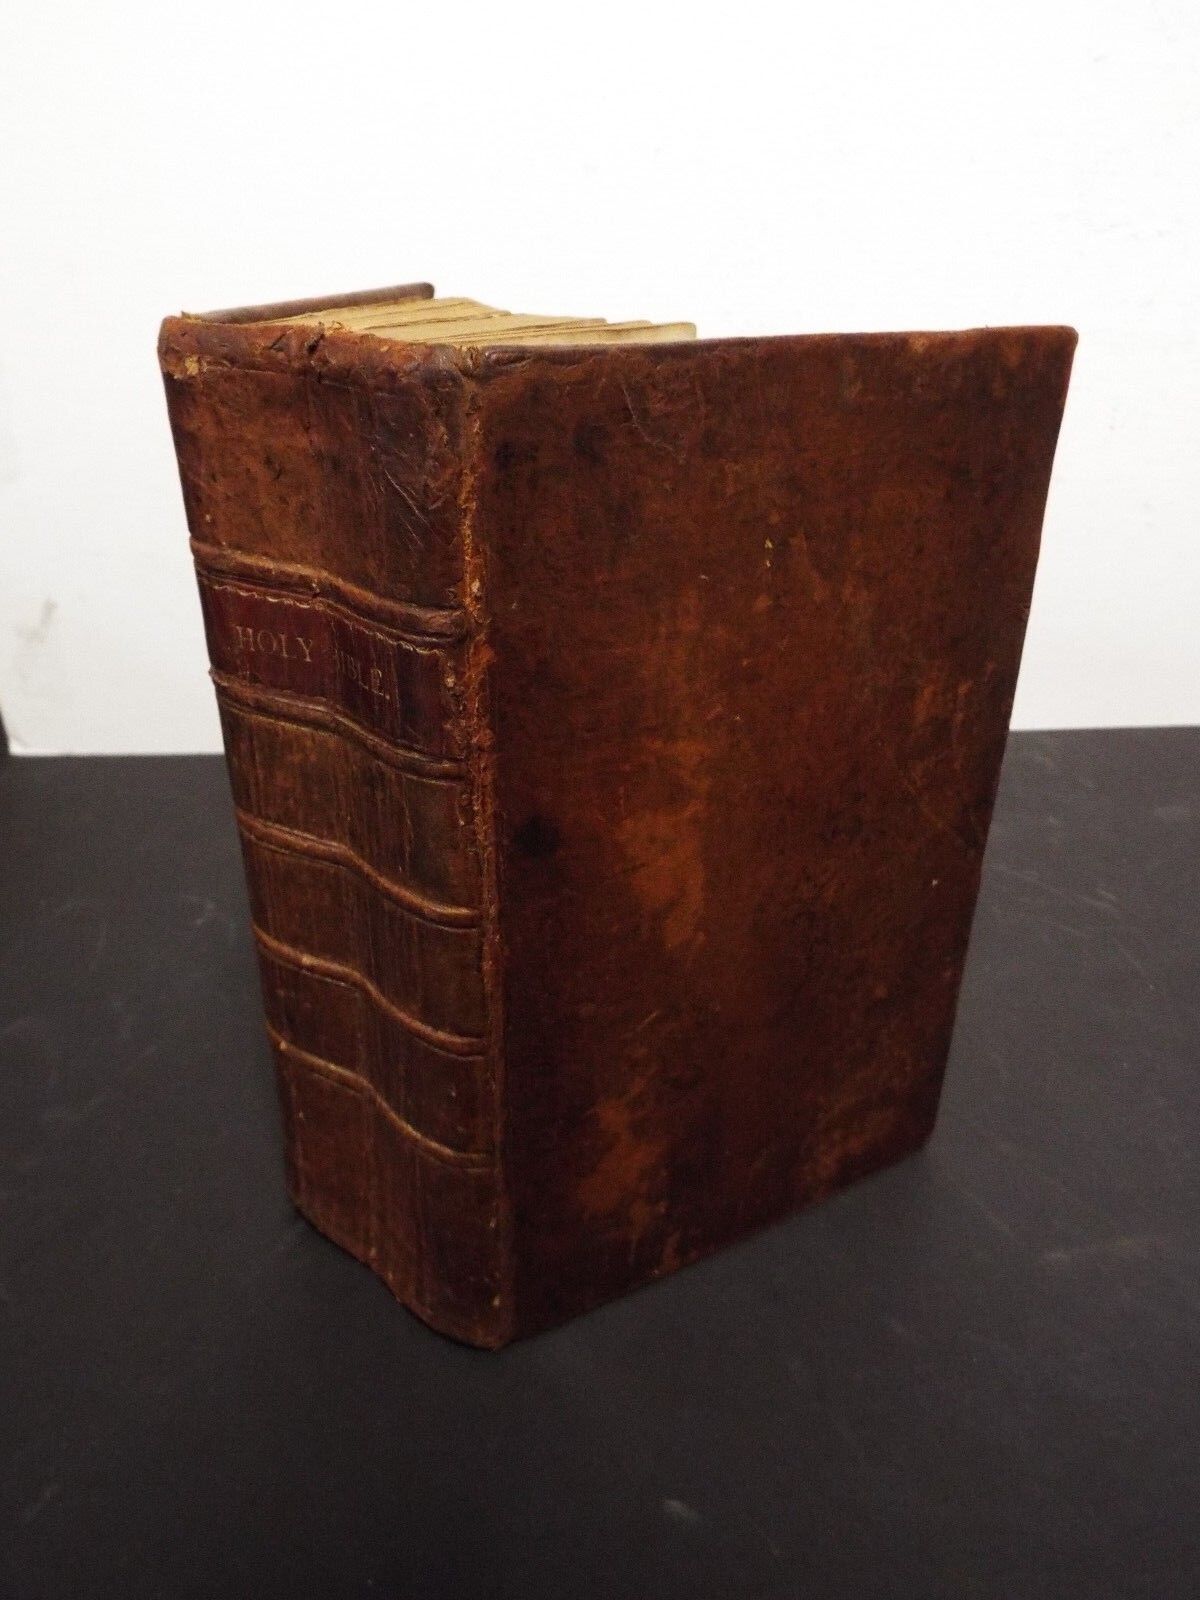 1815 KJV Bible - First Brookfield Edition